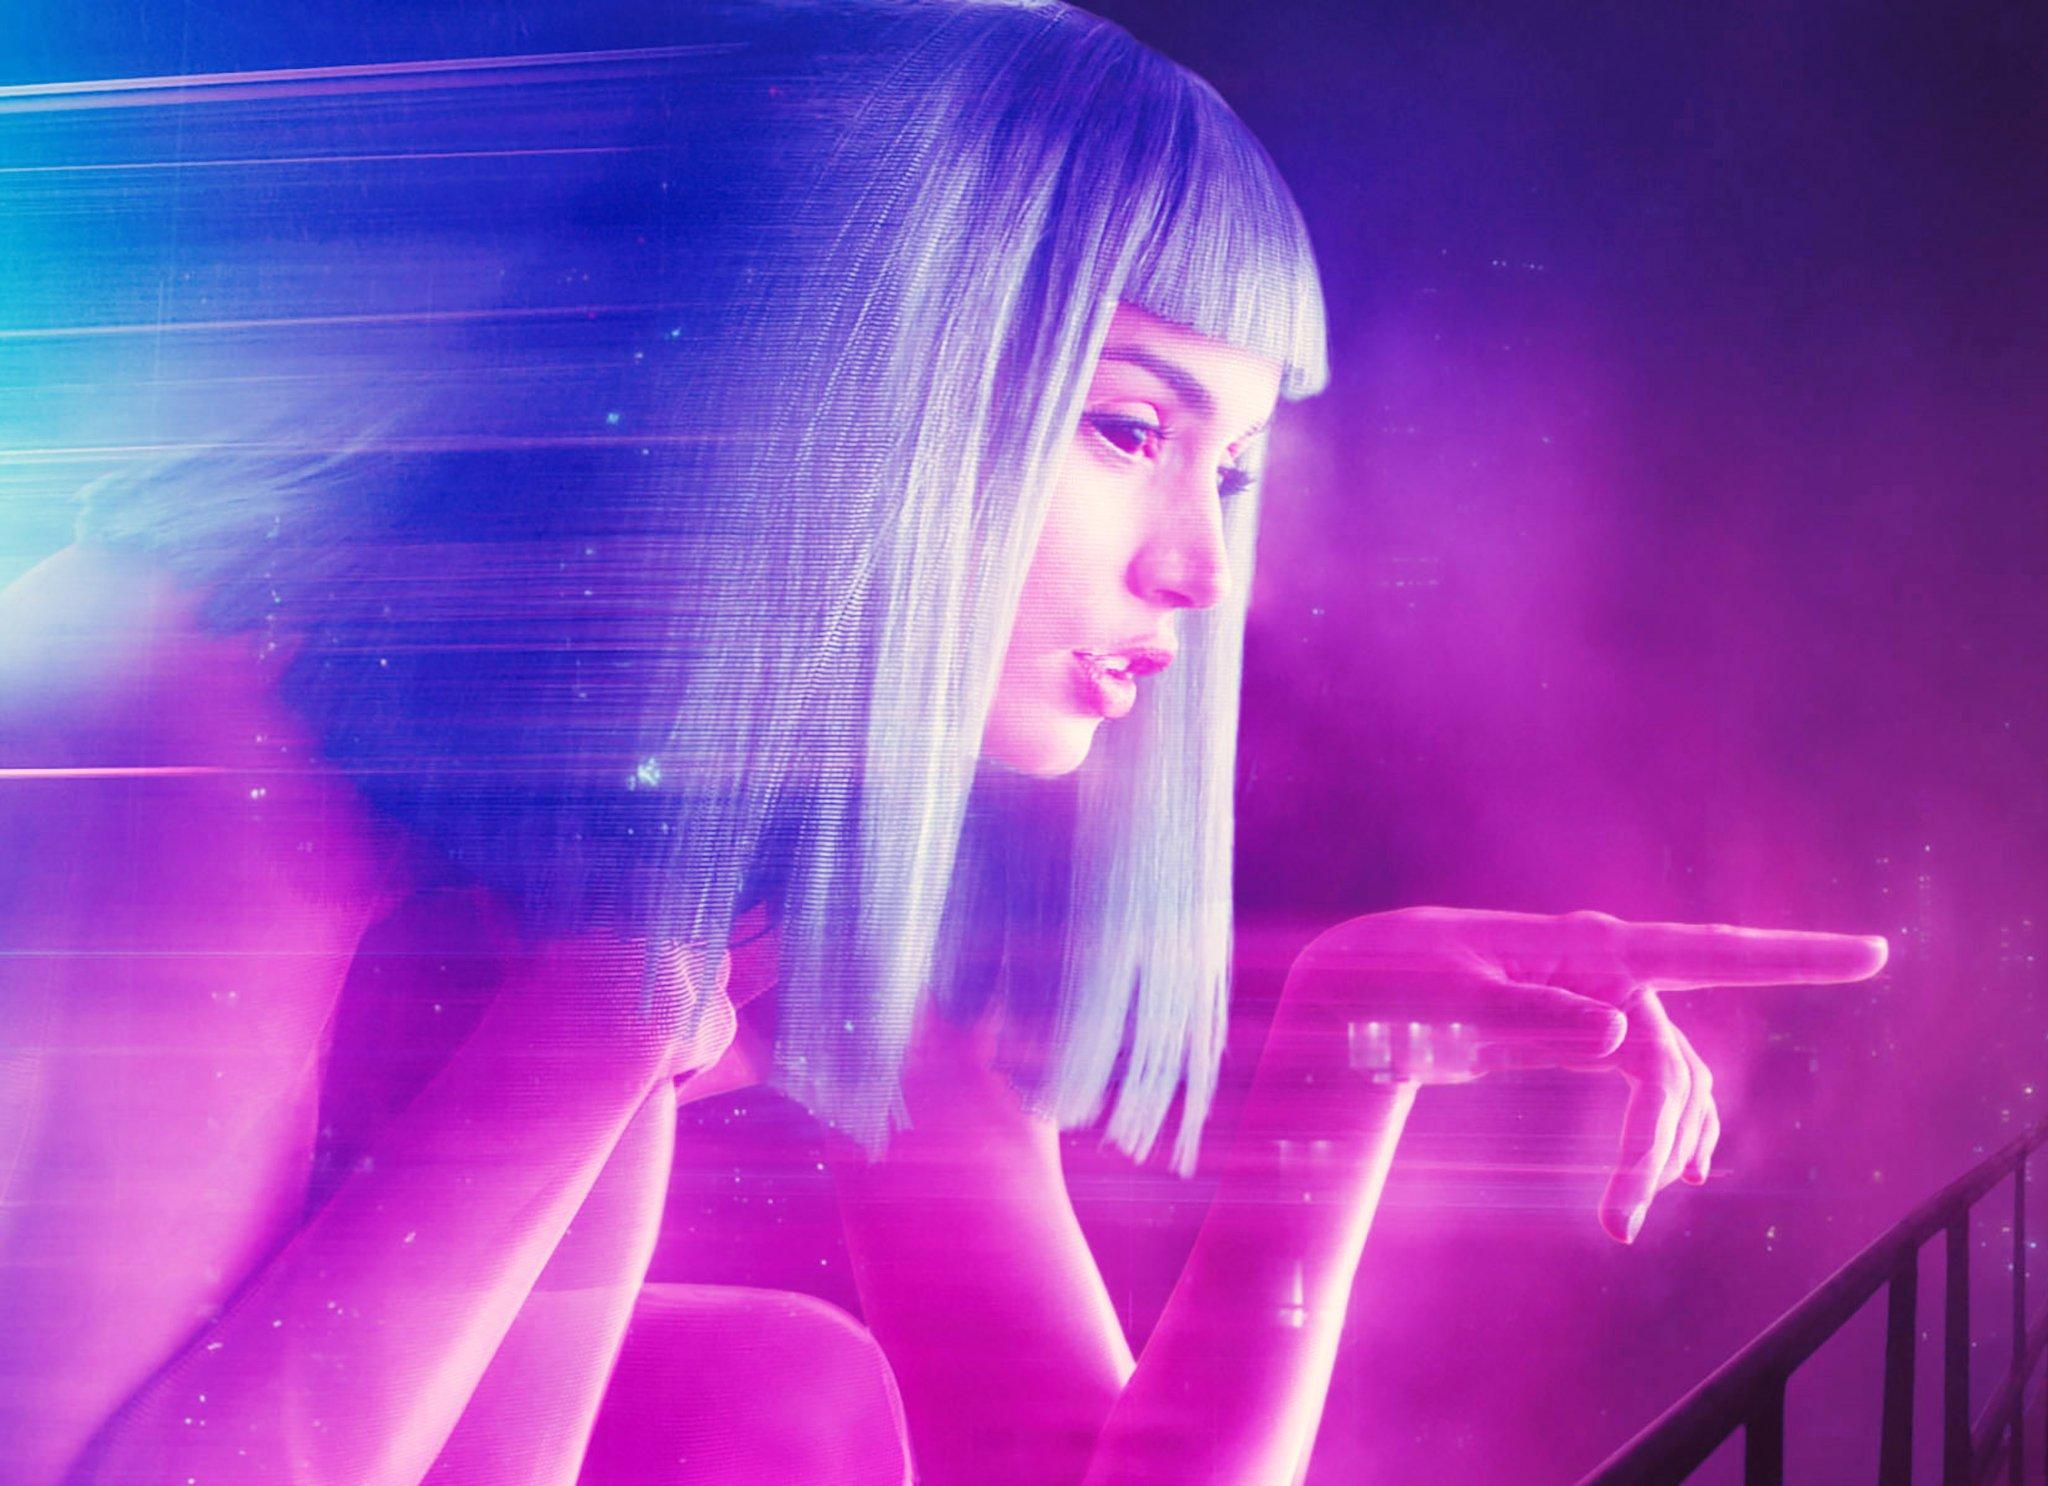 Film Review: Blade Runner 2049